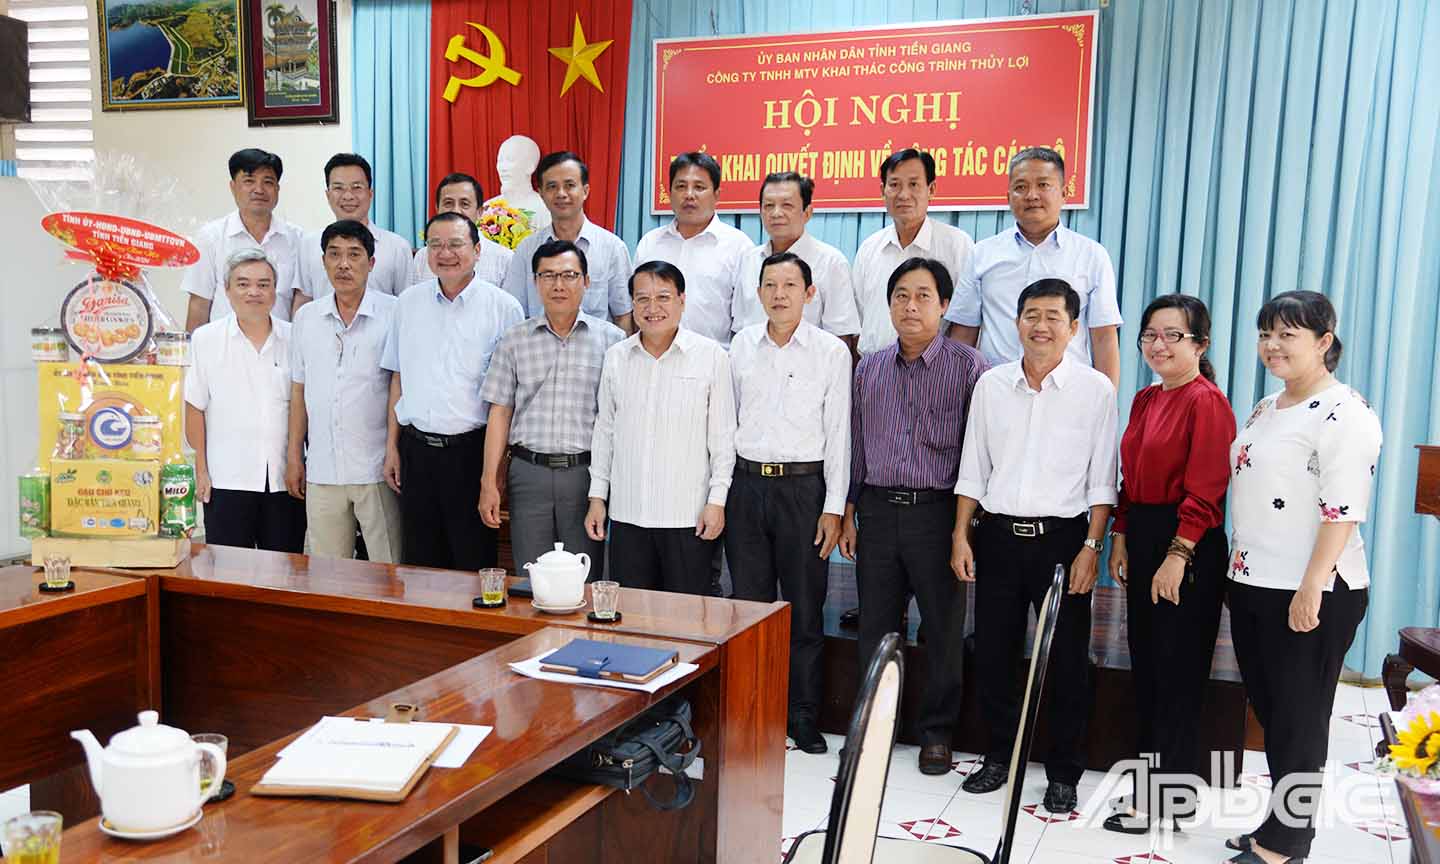 Đồng chí Phạm Văn Trọng chúc tết và tặng quà tập thể công nhân viên Công ty TNHH MTV Công trình thủy lợi tỉnh Tiền Giang.